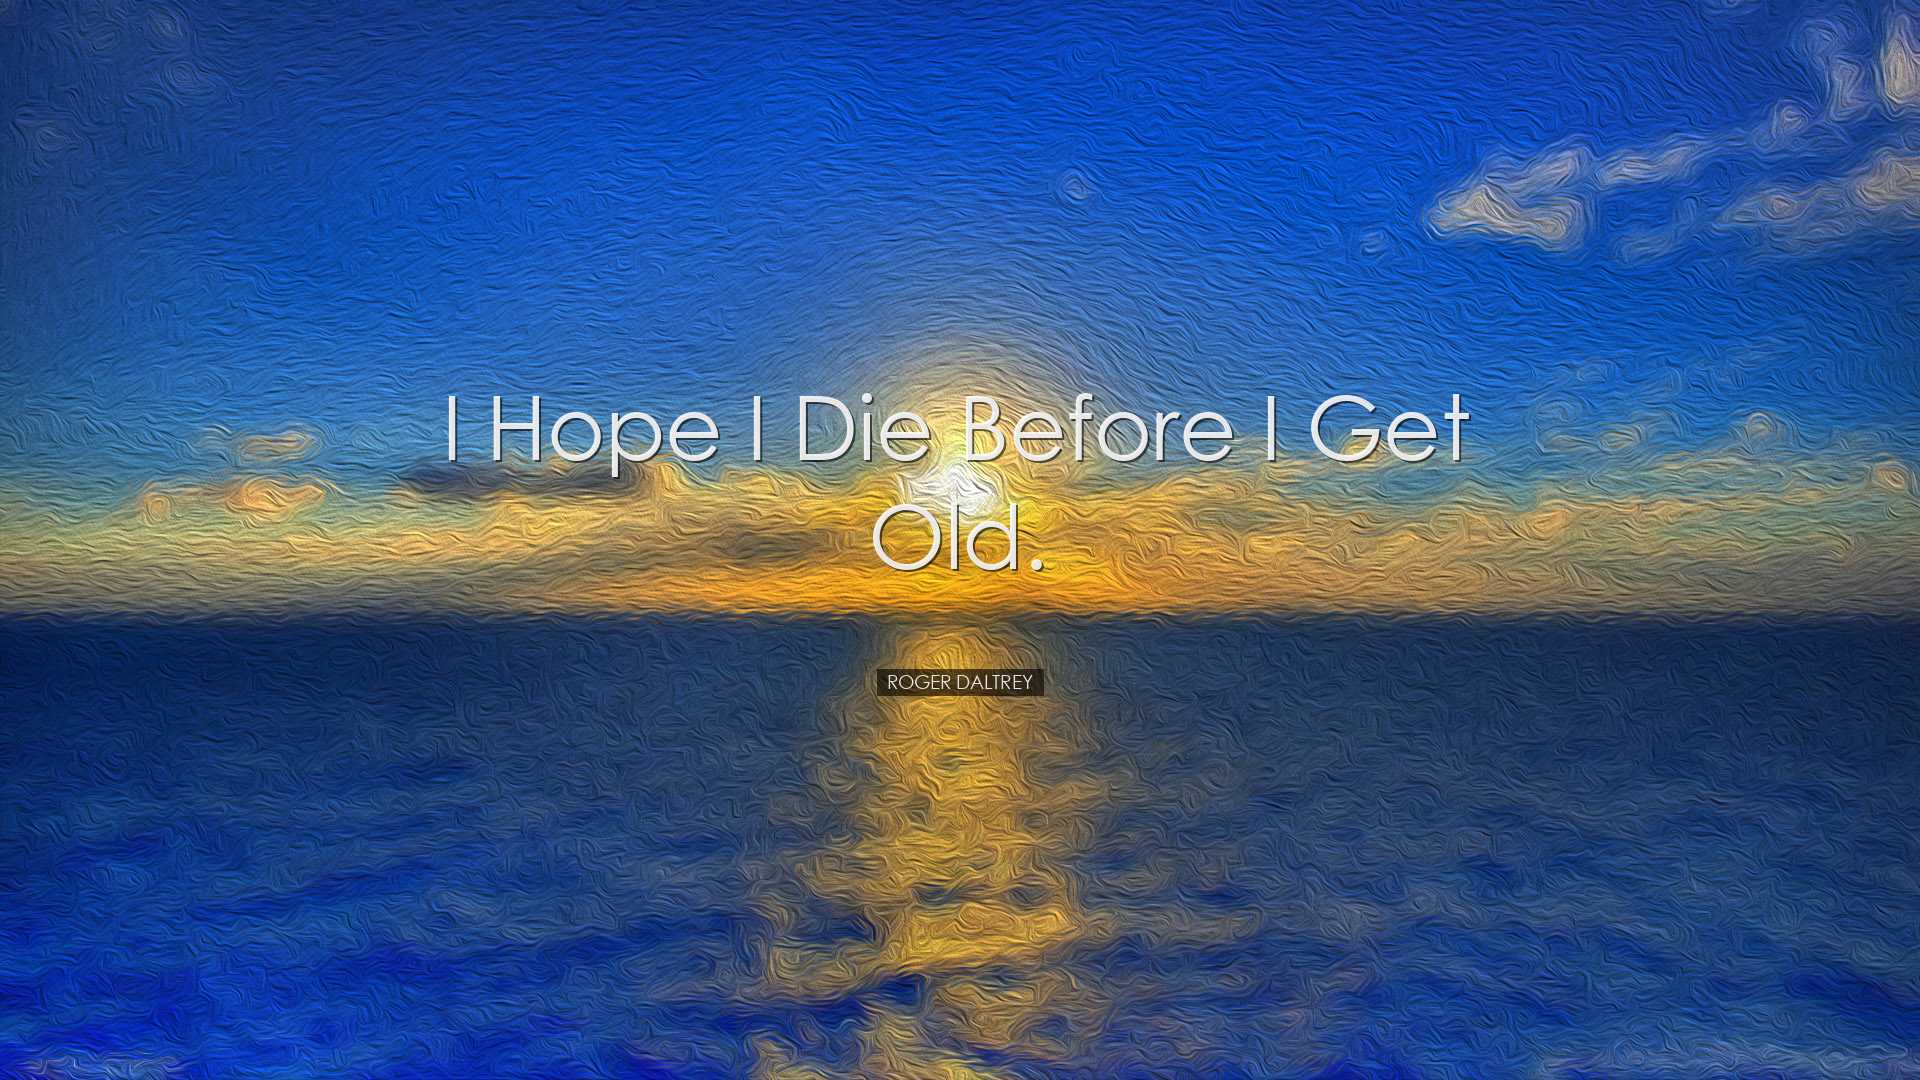 I hope I die before I get old. - Roger Daltrey